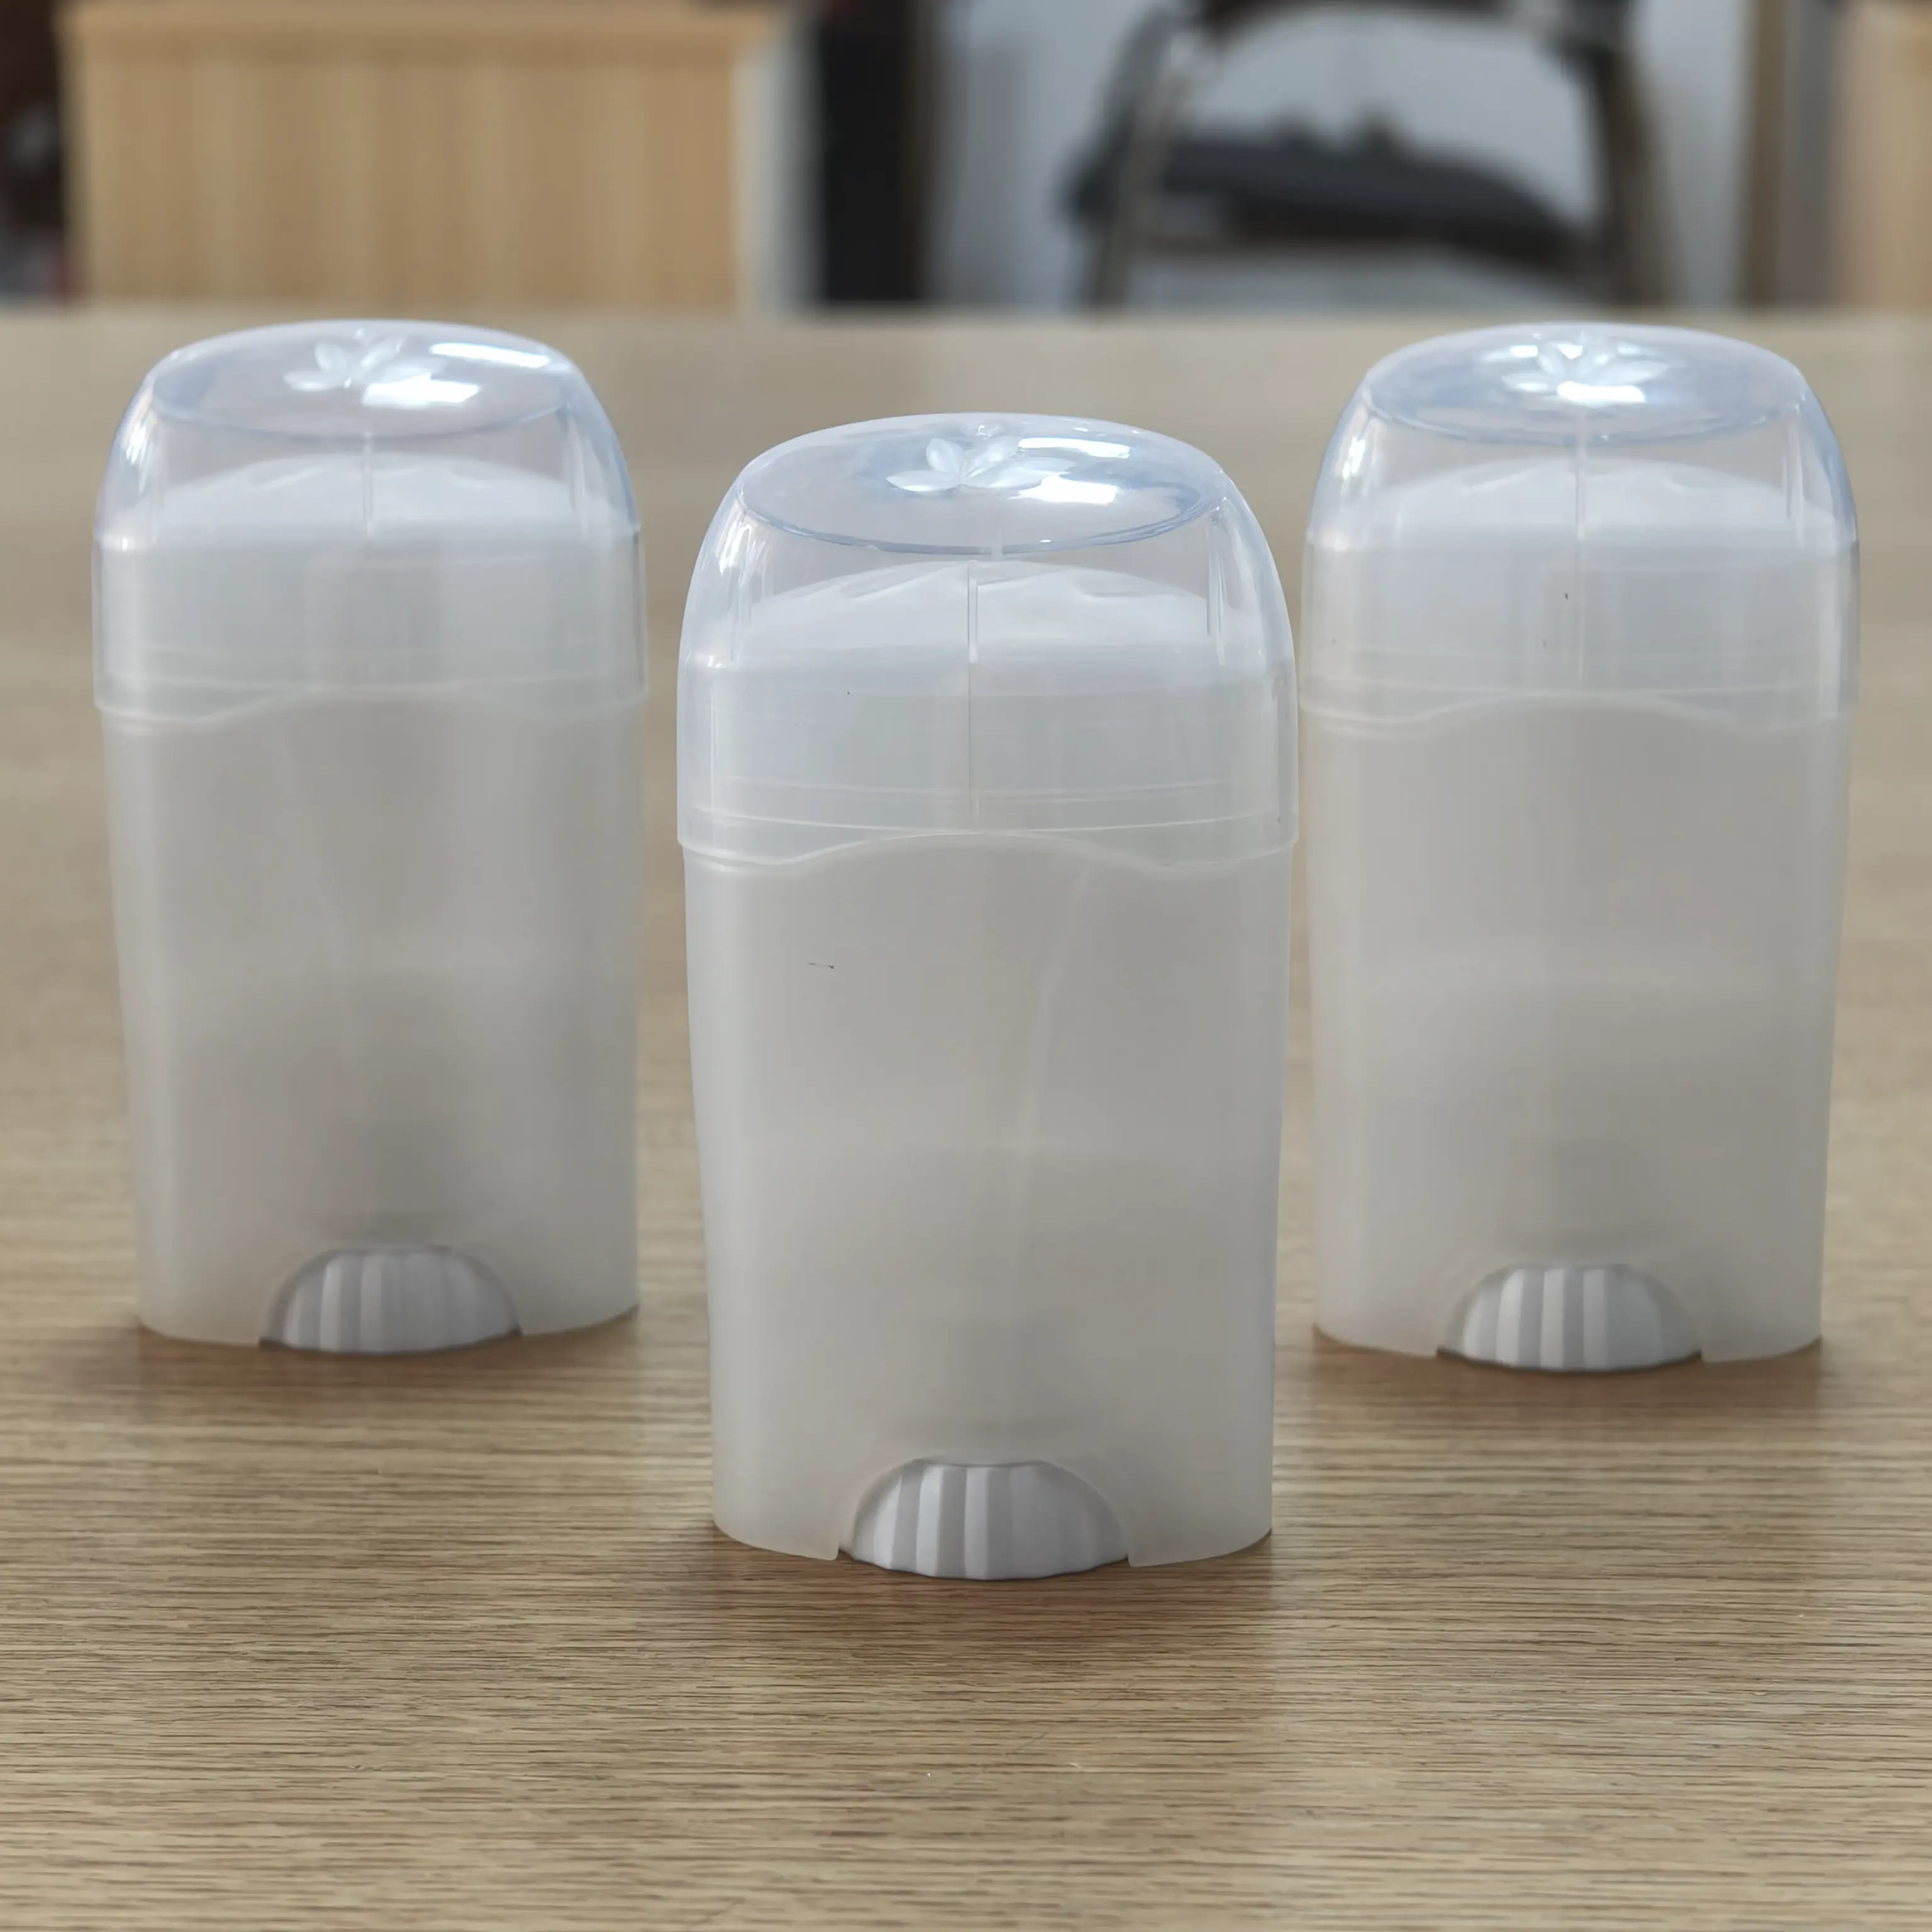 OEM ODM enchimento superior embalagem cor personalizada vazio twist-up plástico claro gel desodorante recipiente com tampas peneira